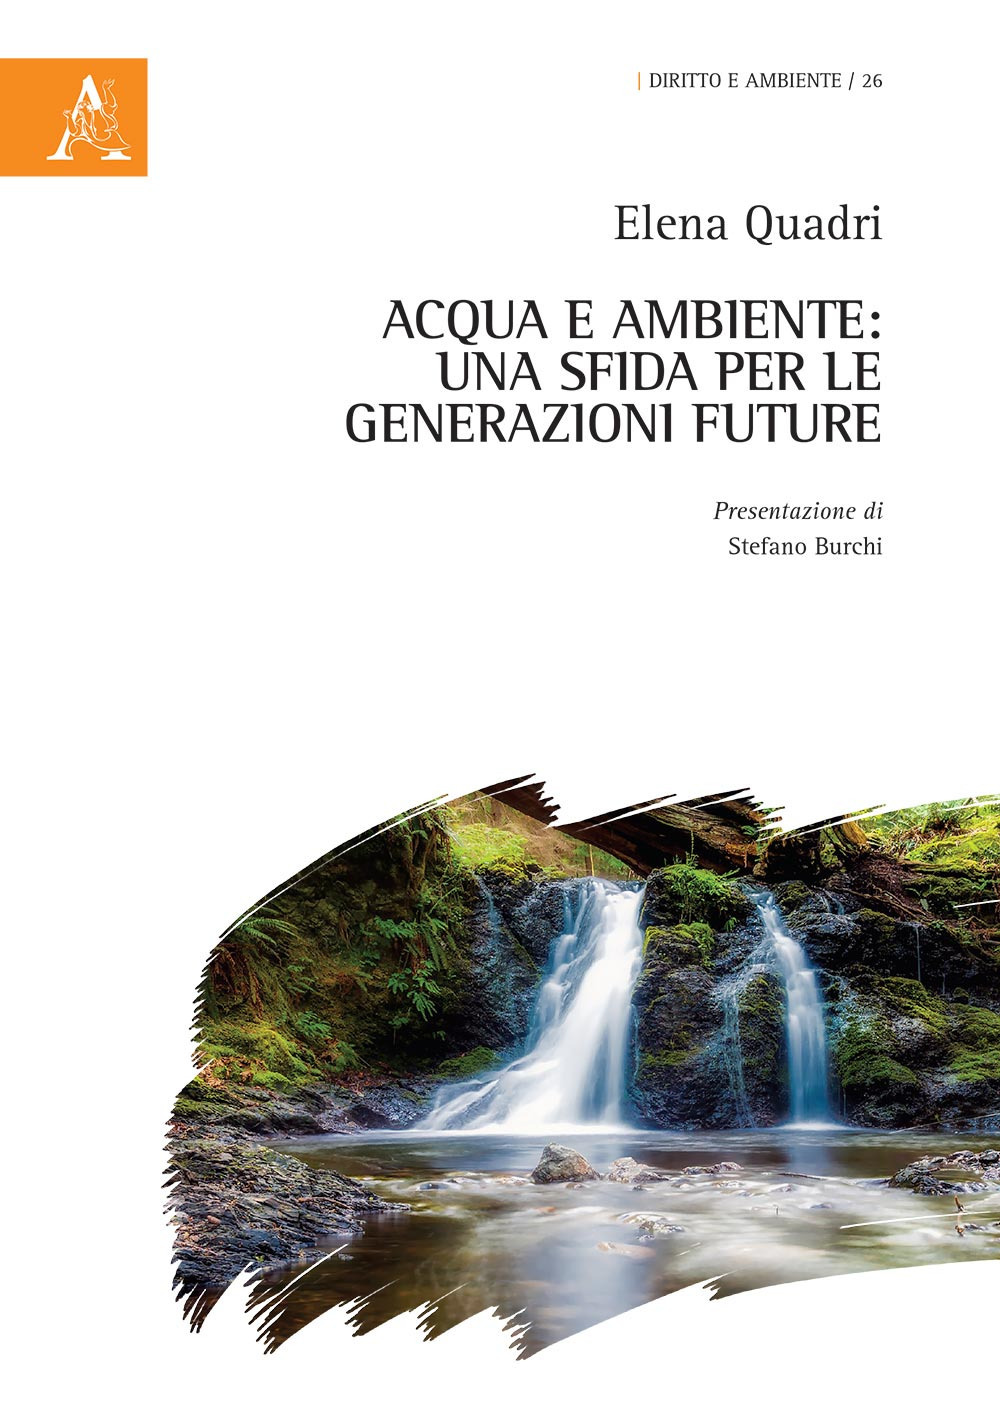 Acqua e ambiente: una sfida per le generazioni future